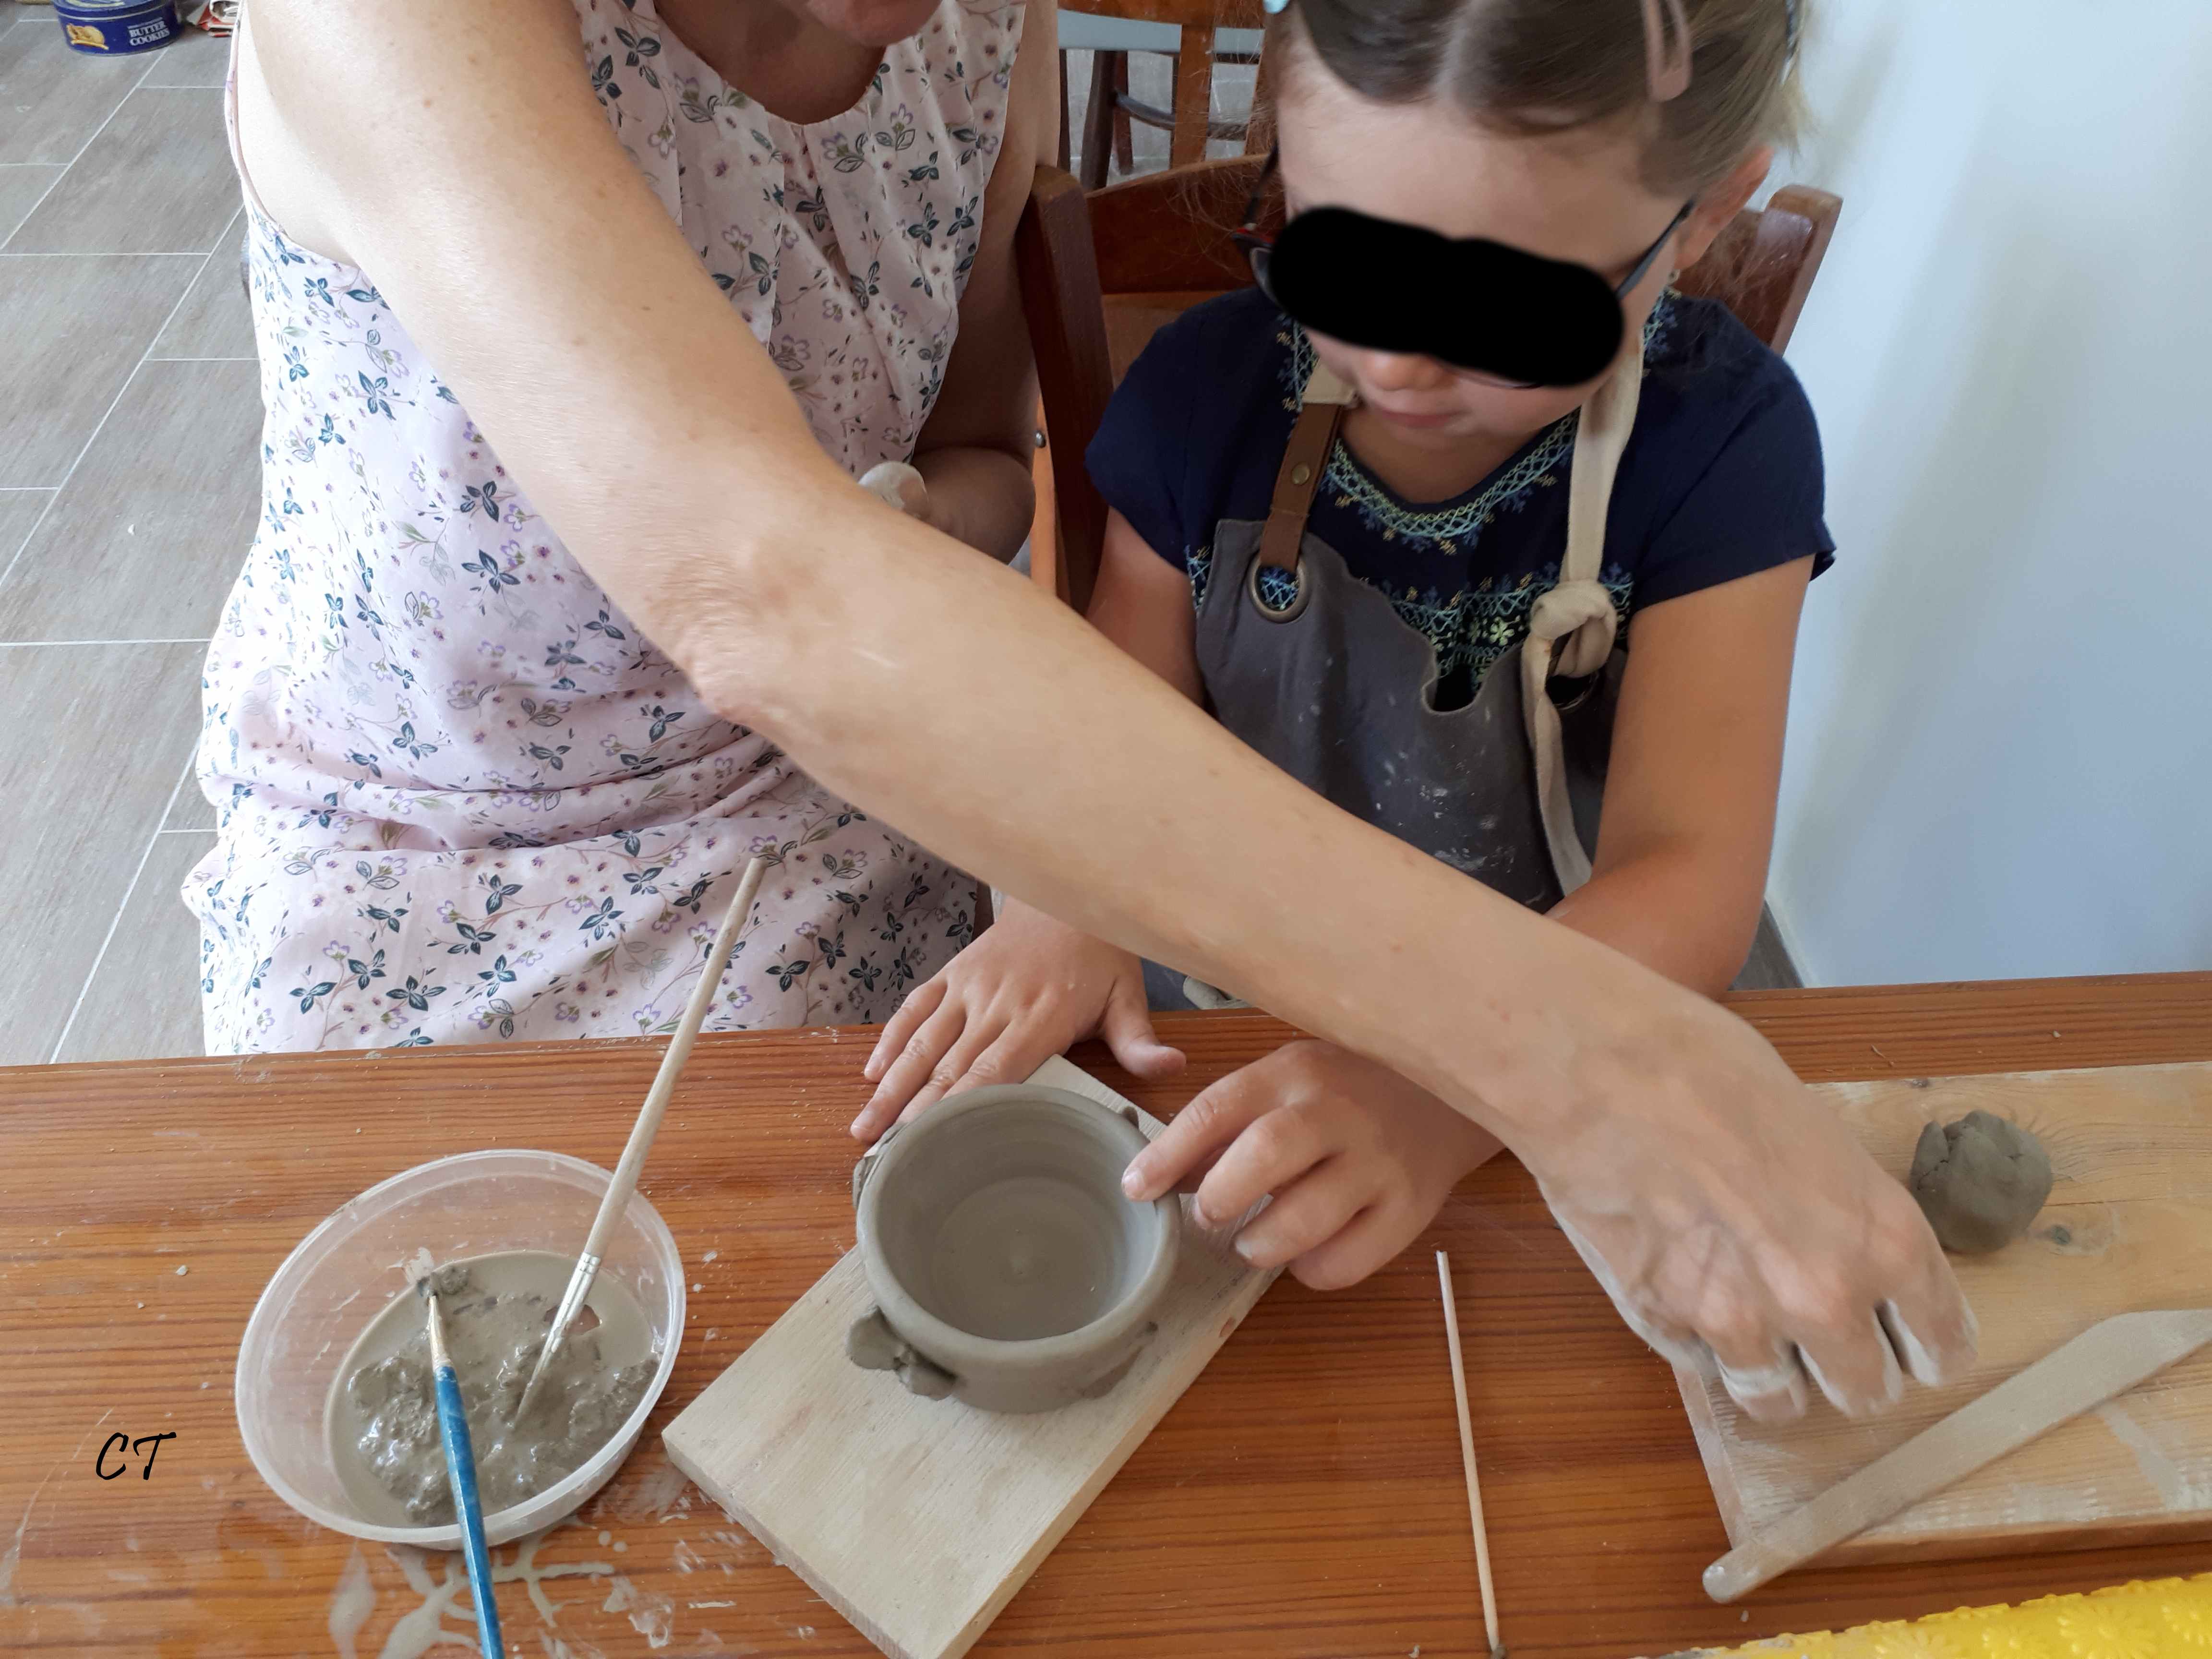 Atelier parent/enfant poterie à La Seigneurie, Andlau